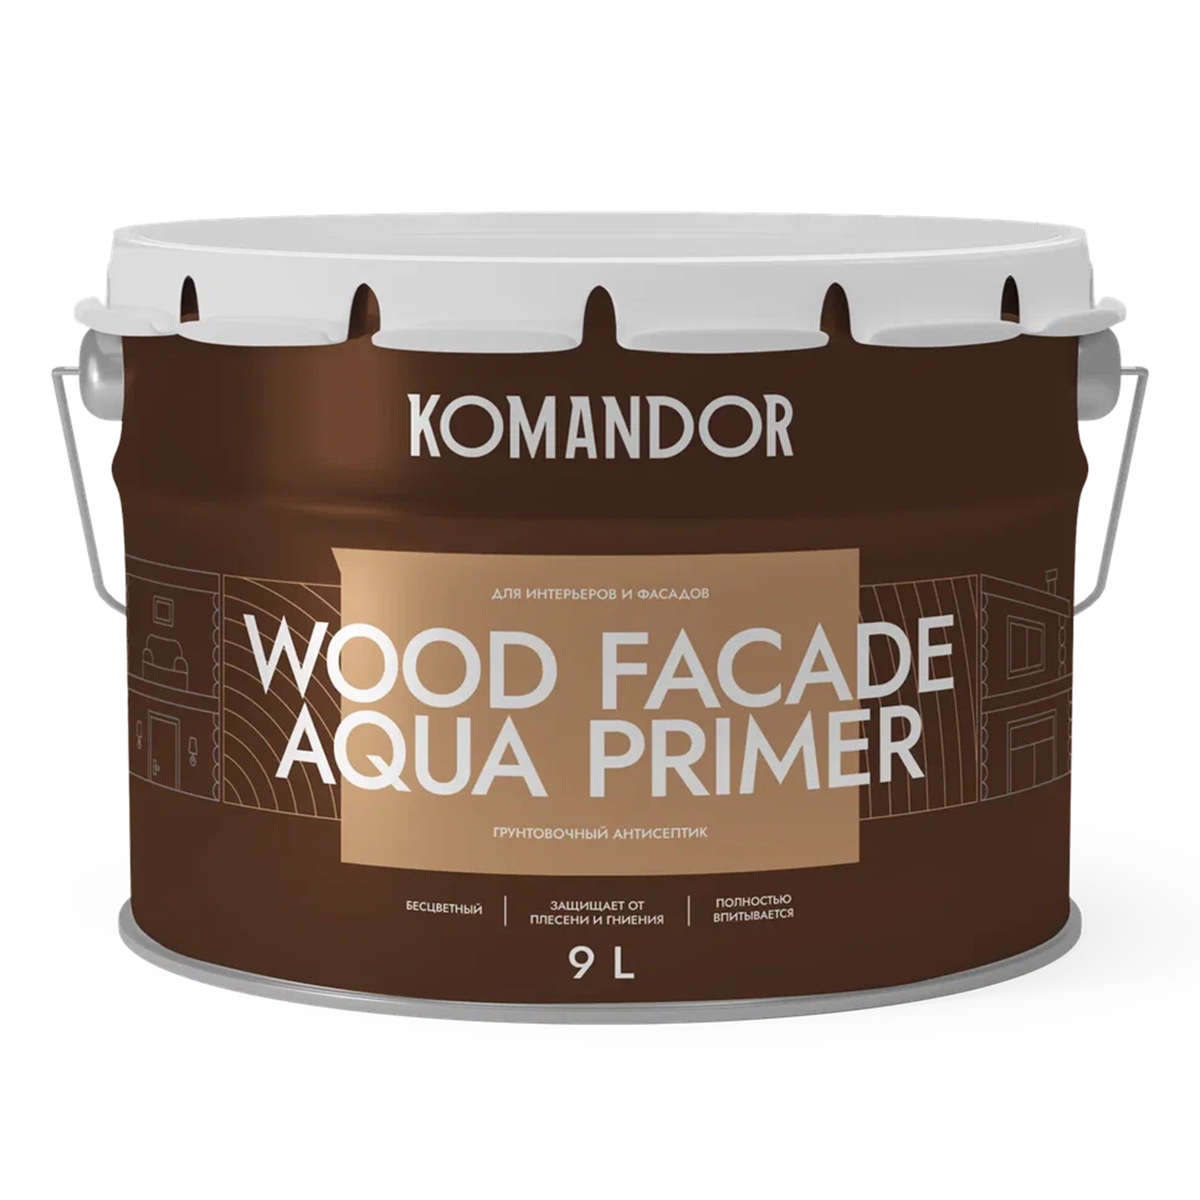 Грунт-антисептик для дерева Komandor Wood Facade Aqua Primer, 9 л аэрозольный алкидный грунт rayday